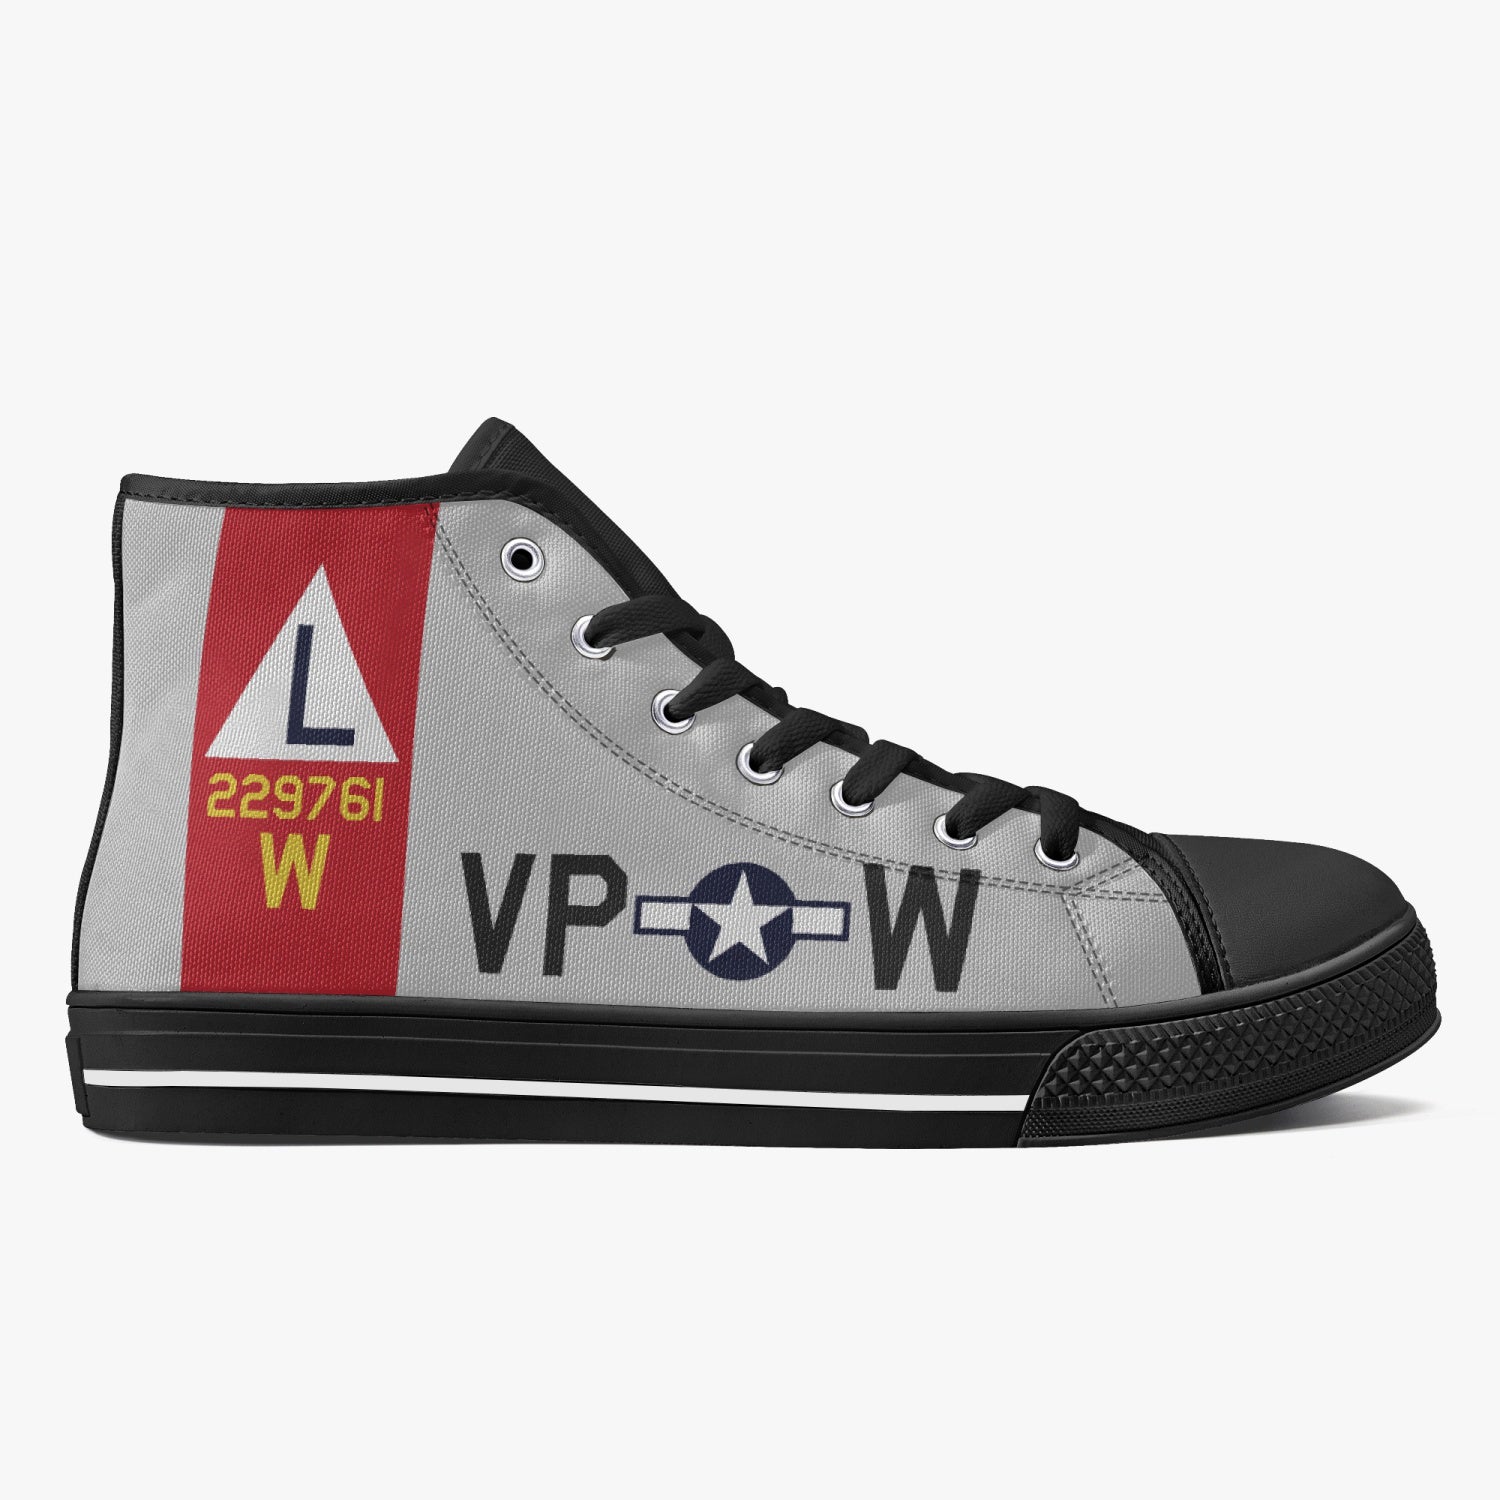 B-17 "VP-W" (229761) High Top Canvas Shoes - I Love a Hangar